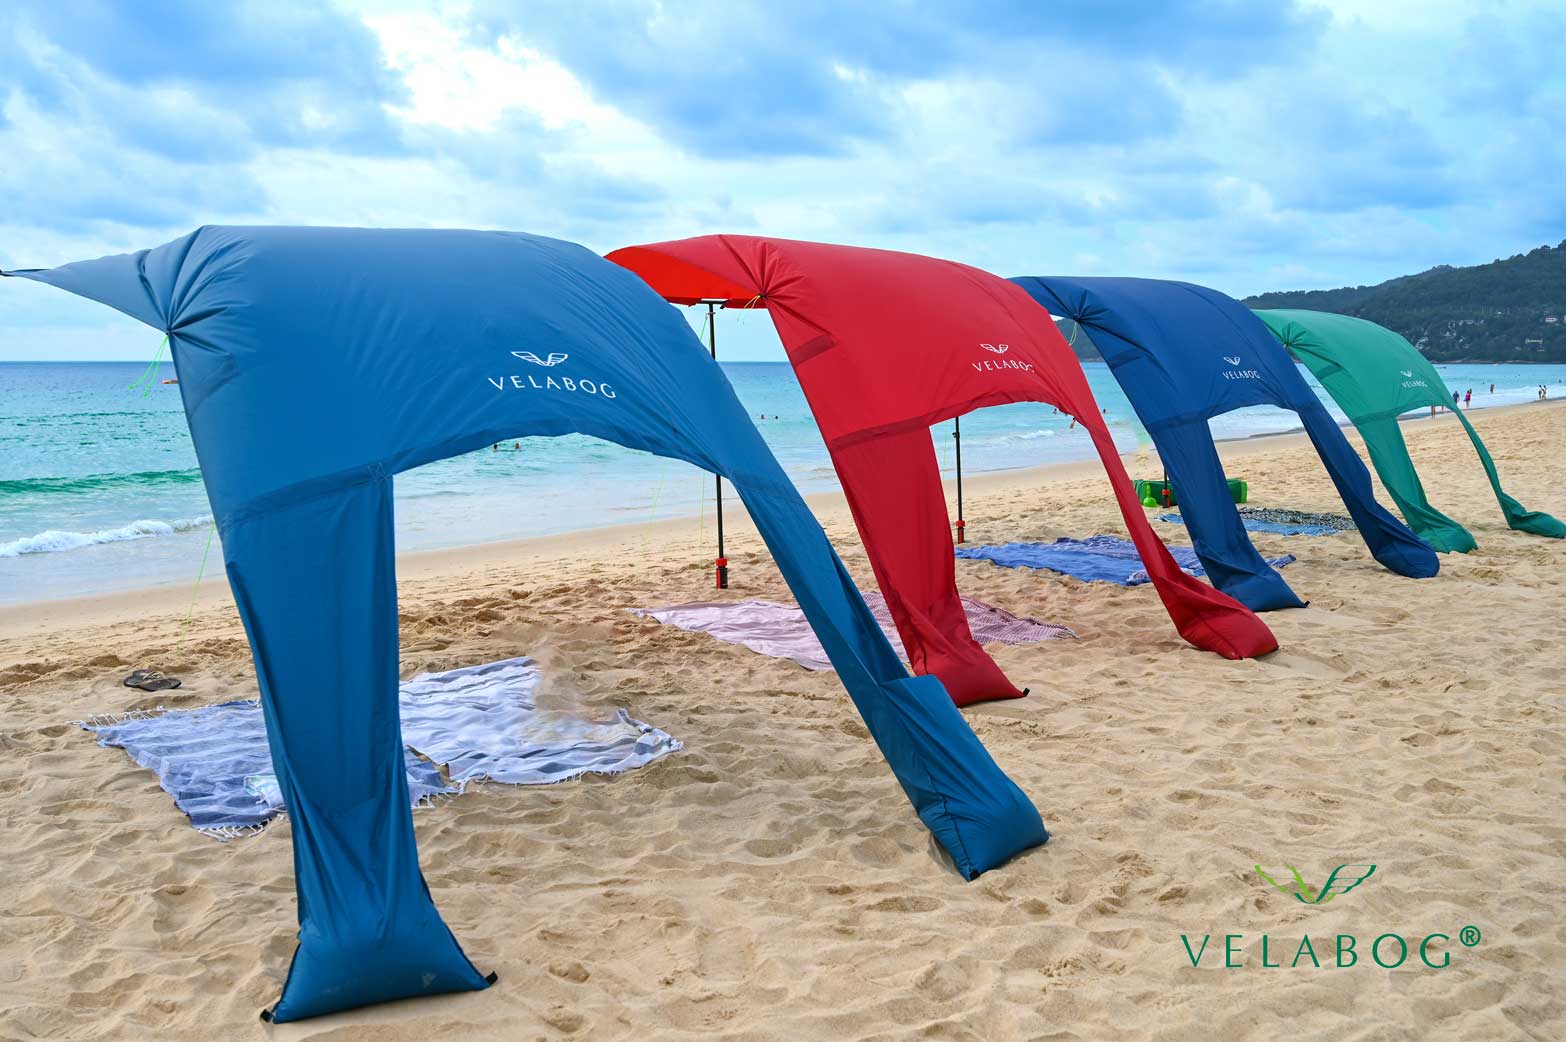 Quatre voiles d’ombrage tentes plage Velabog Breeze regroupées pour offrir une protection anti-UV bien aérée sur la plage. Le meilleur auvent de plage. Option de montage par vent faible à fort. Vue de dos.